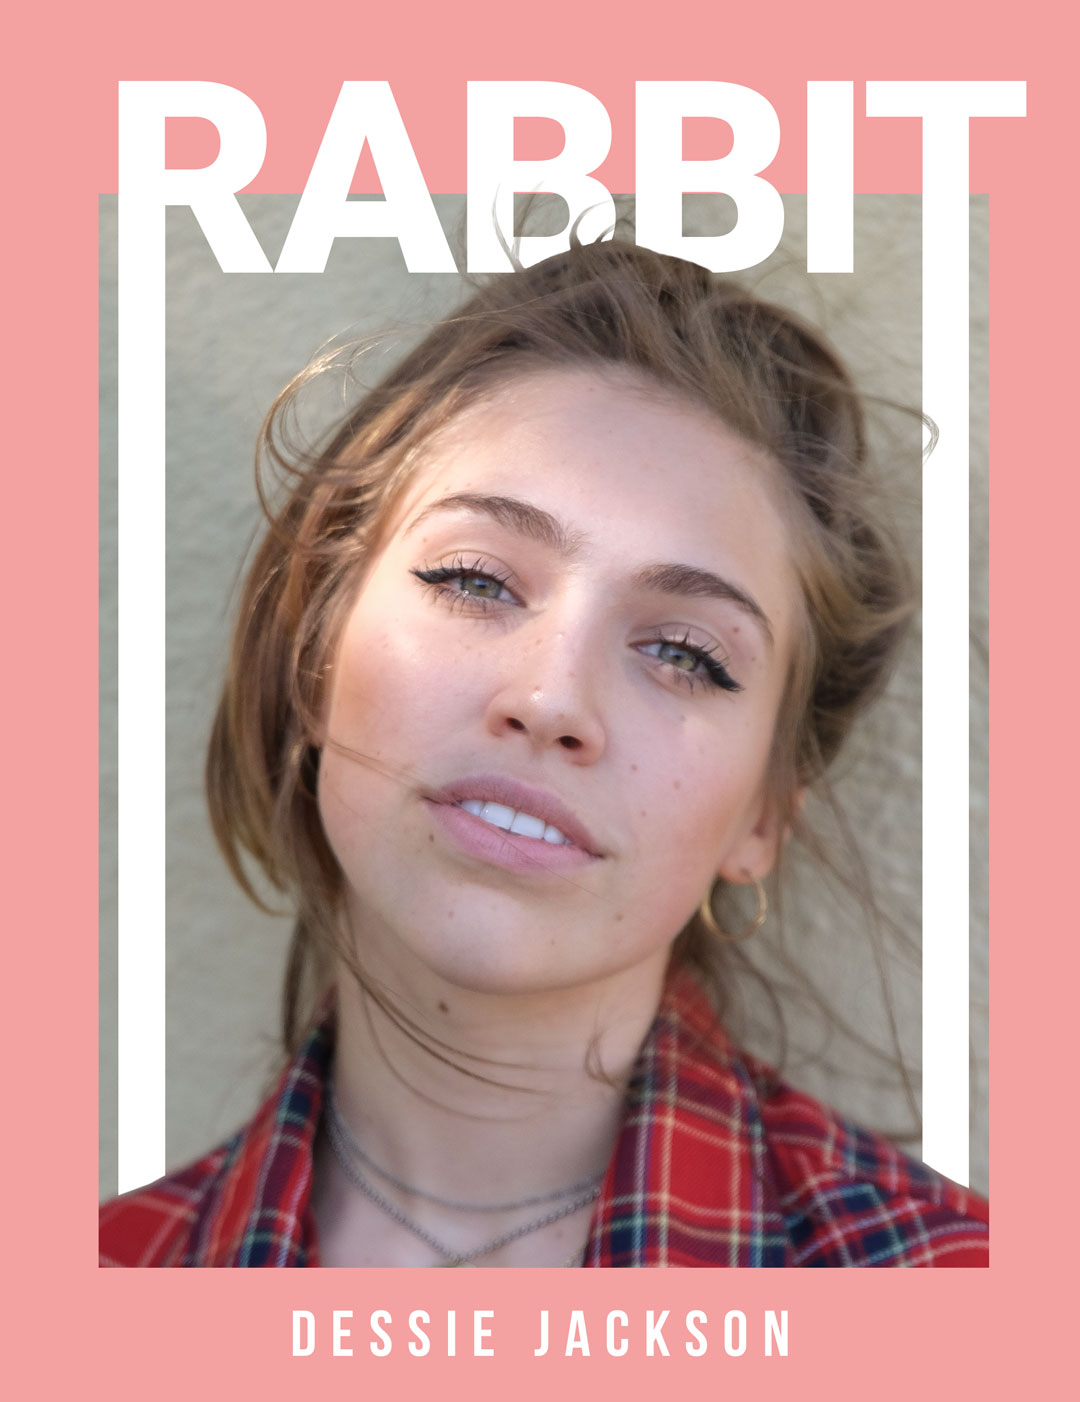 Dessie Jackson - Magazine by Rabbit